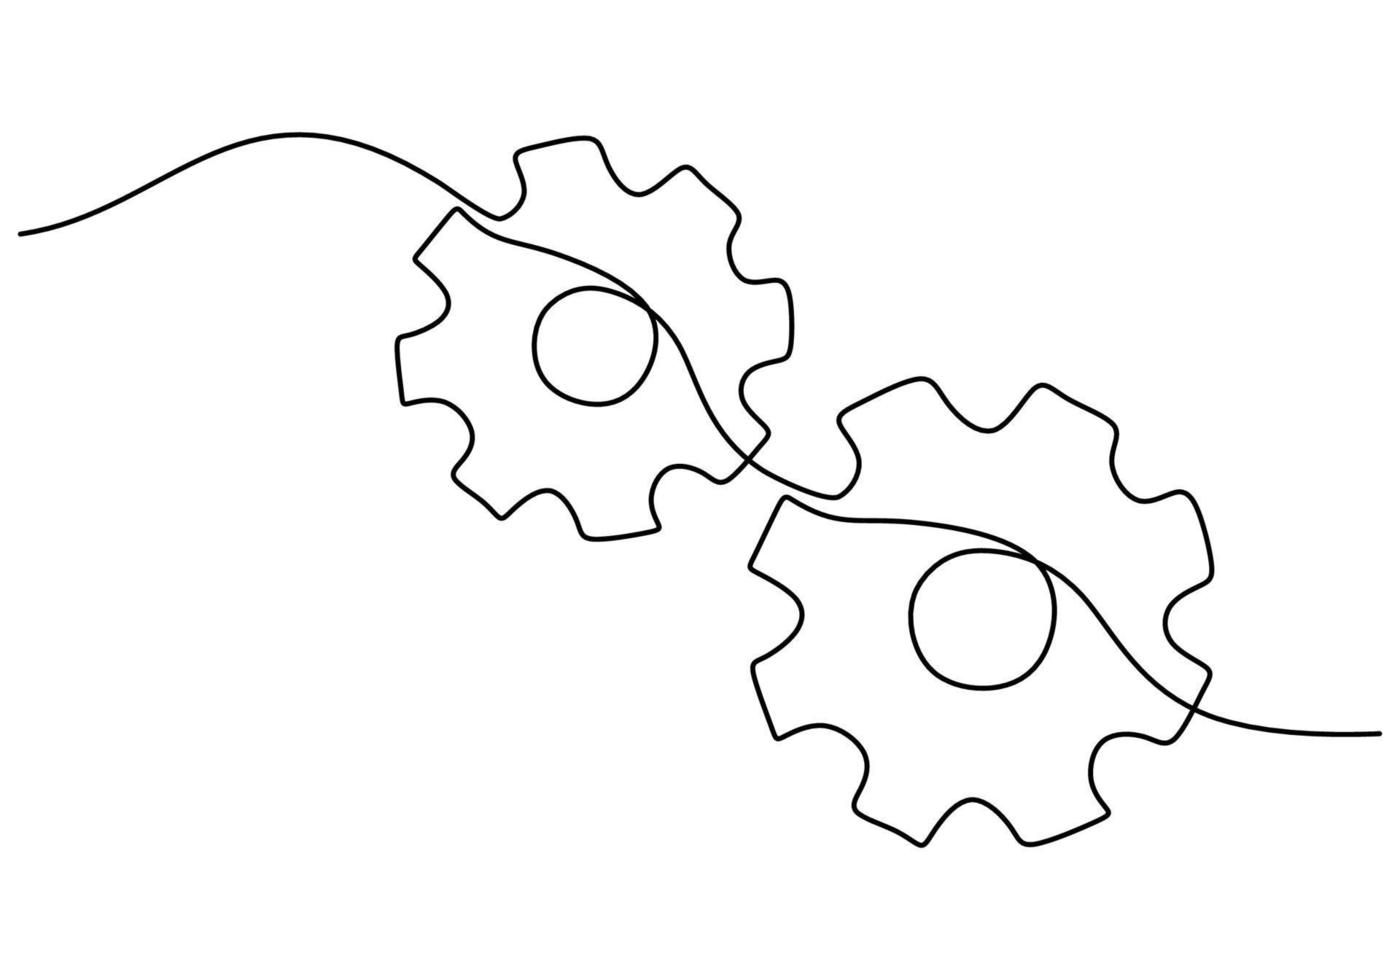 uno continuo singolo linea mano disegno di Due ingranaggi vettore